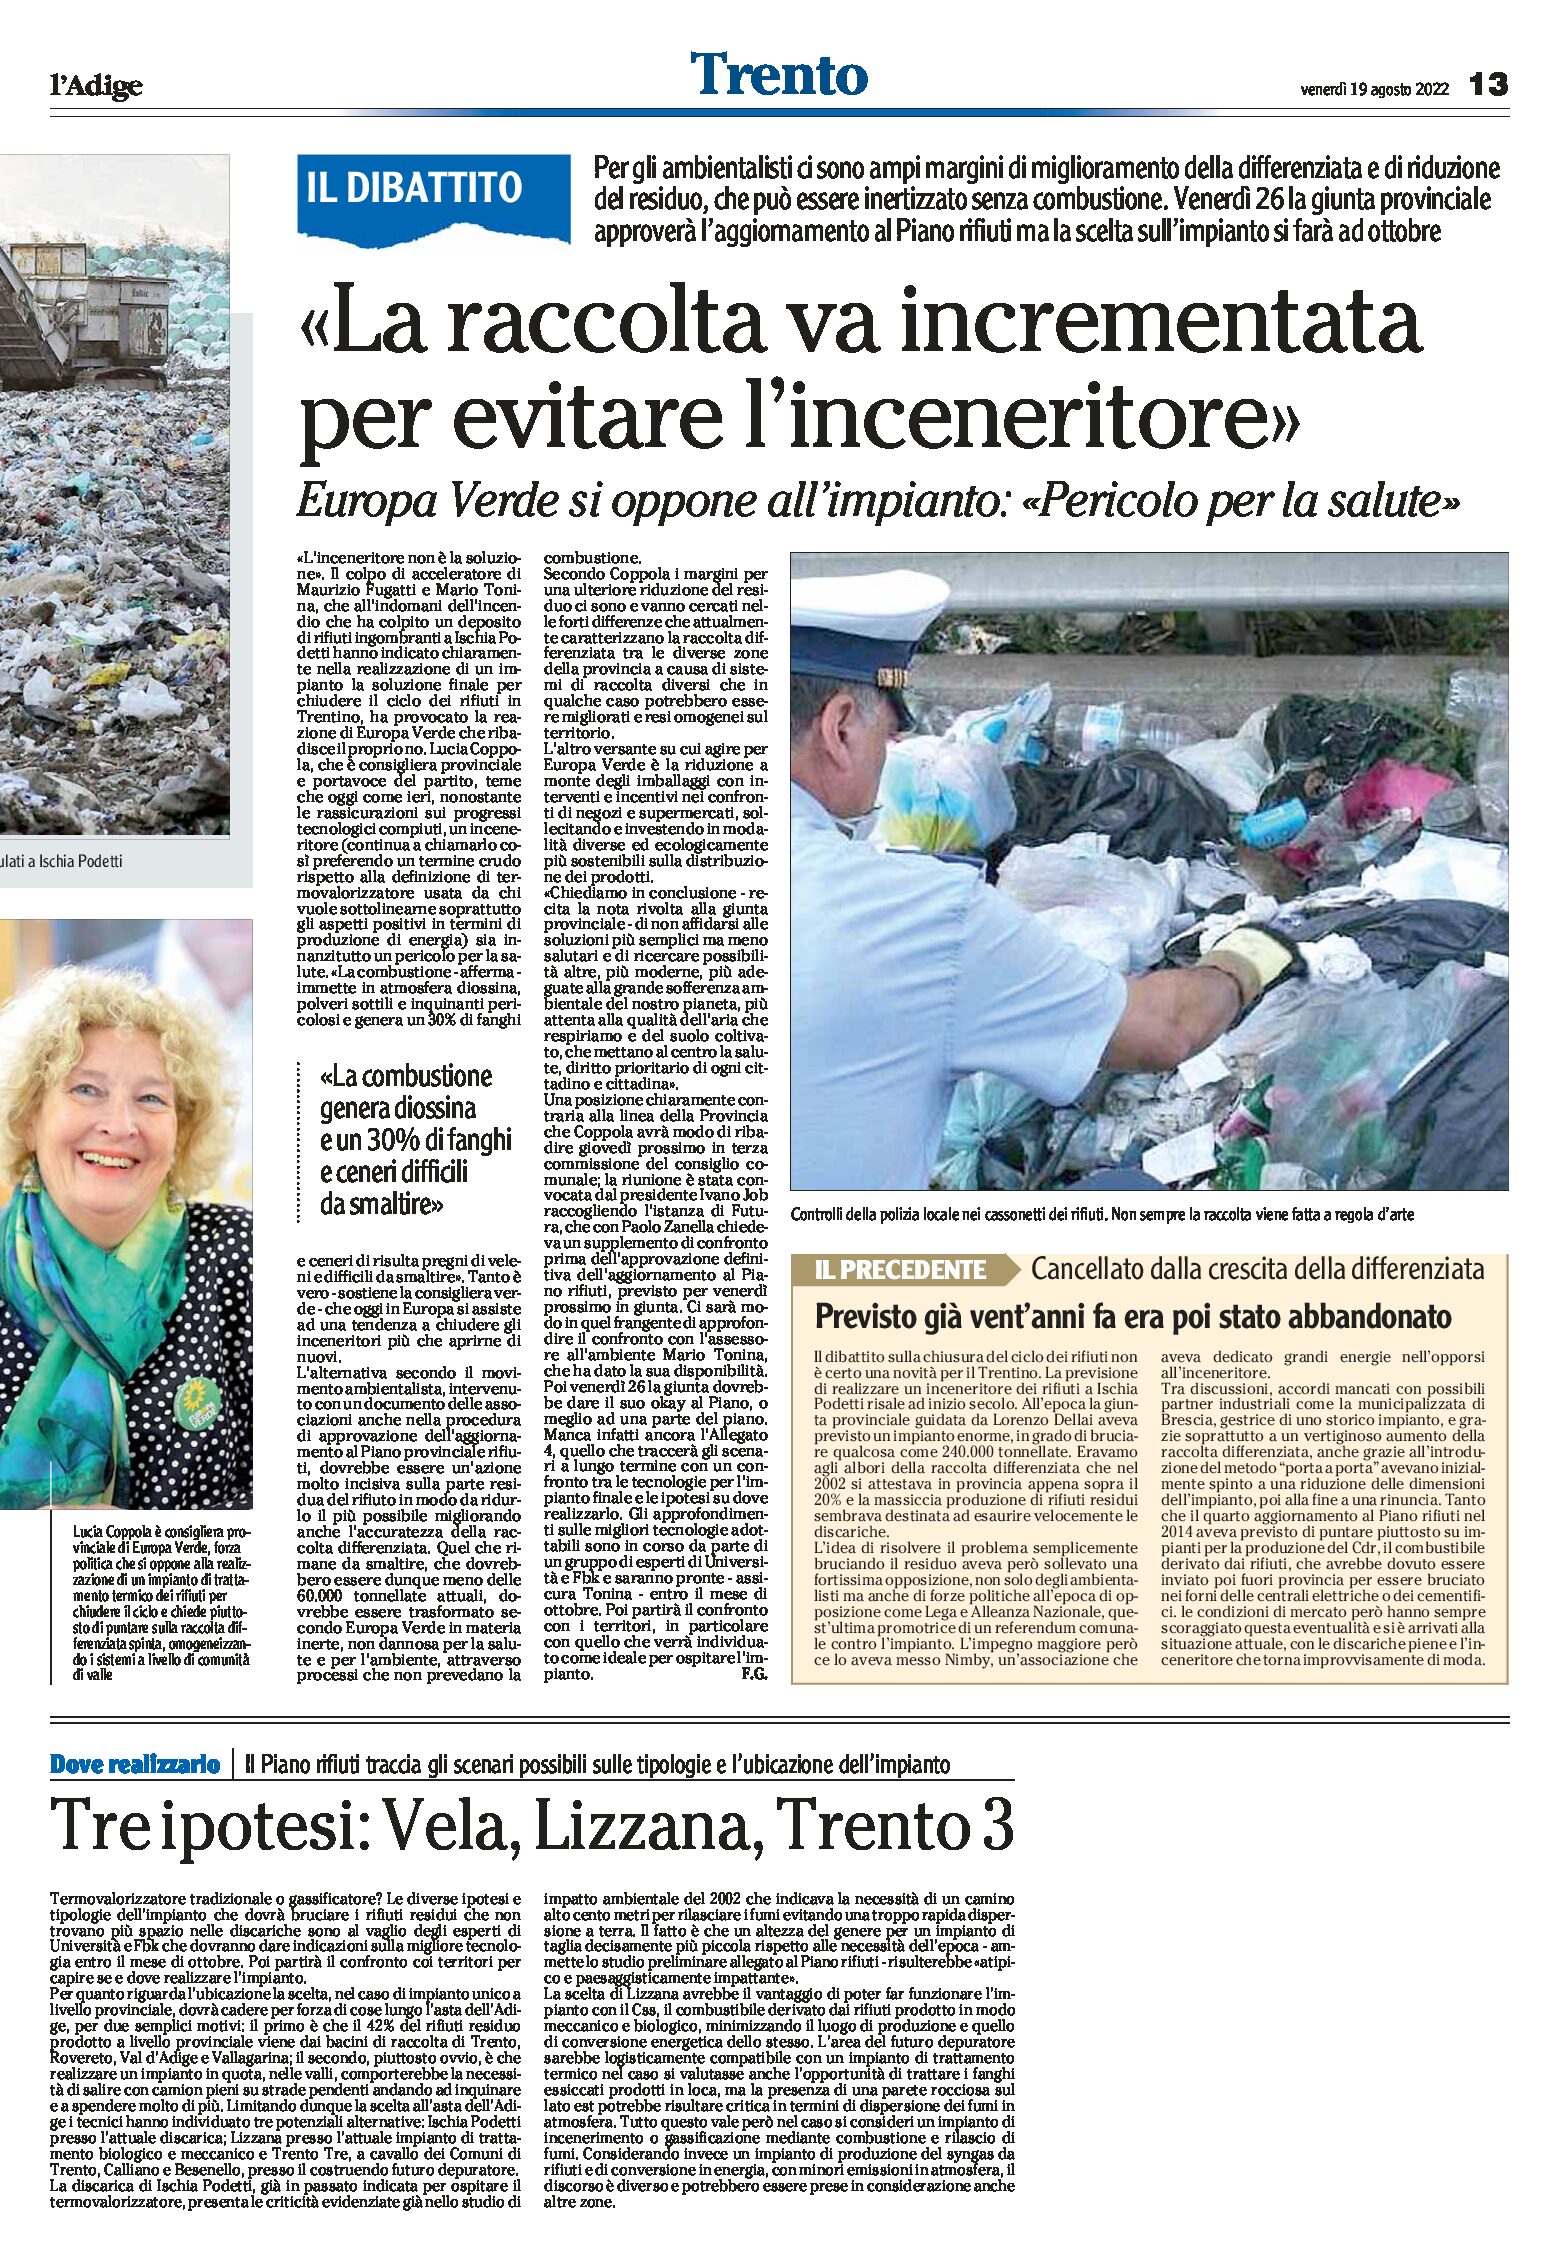 Trentino, rifiuti: la raccolta va incrementata per evitare l’inceneritore